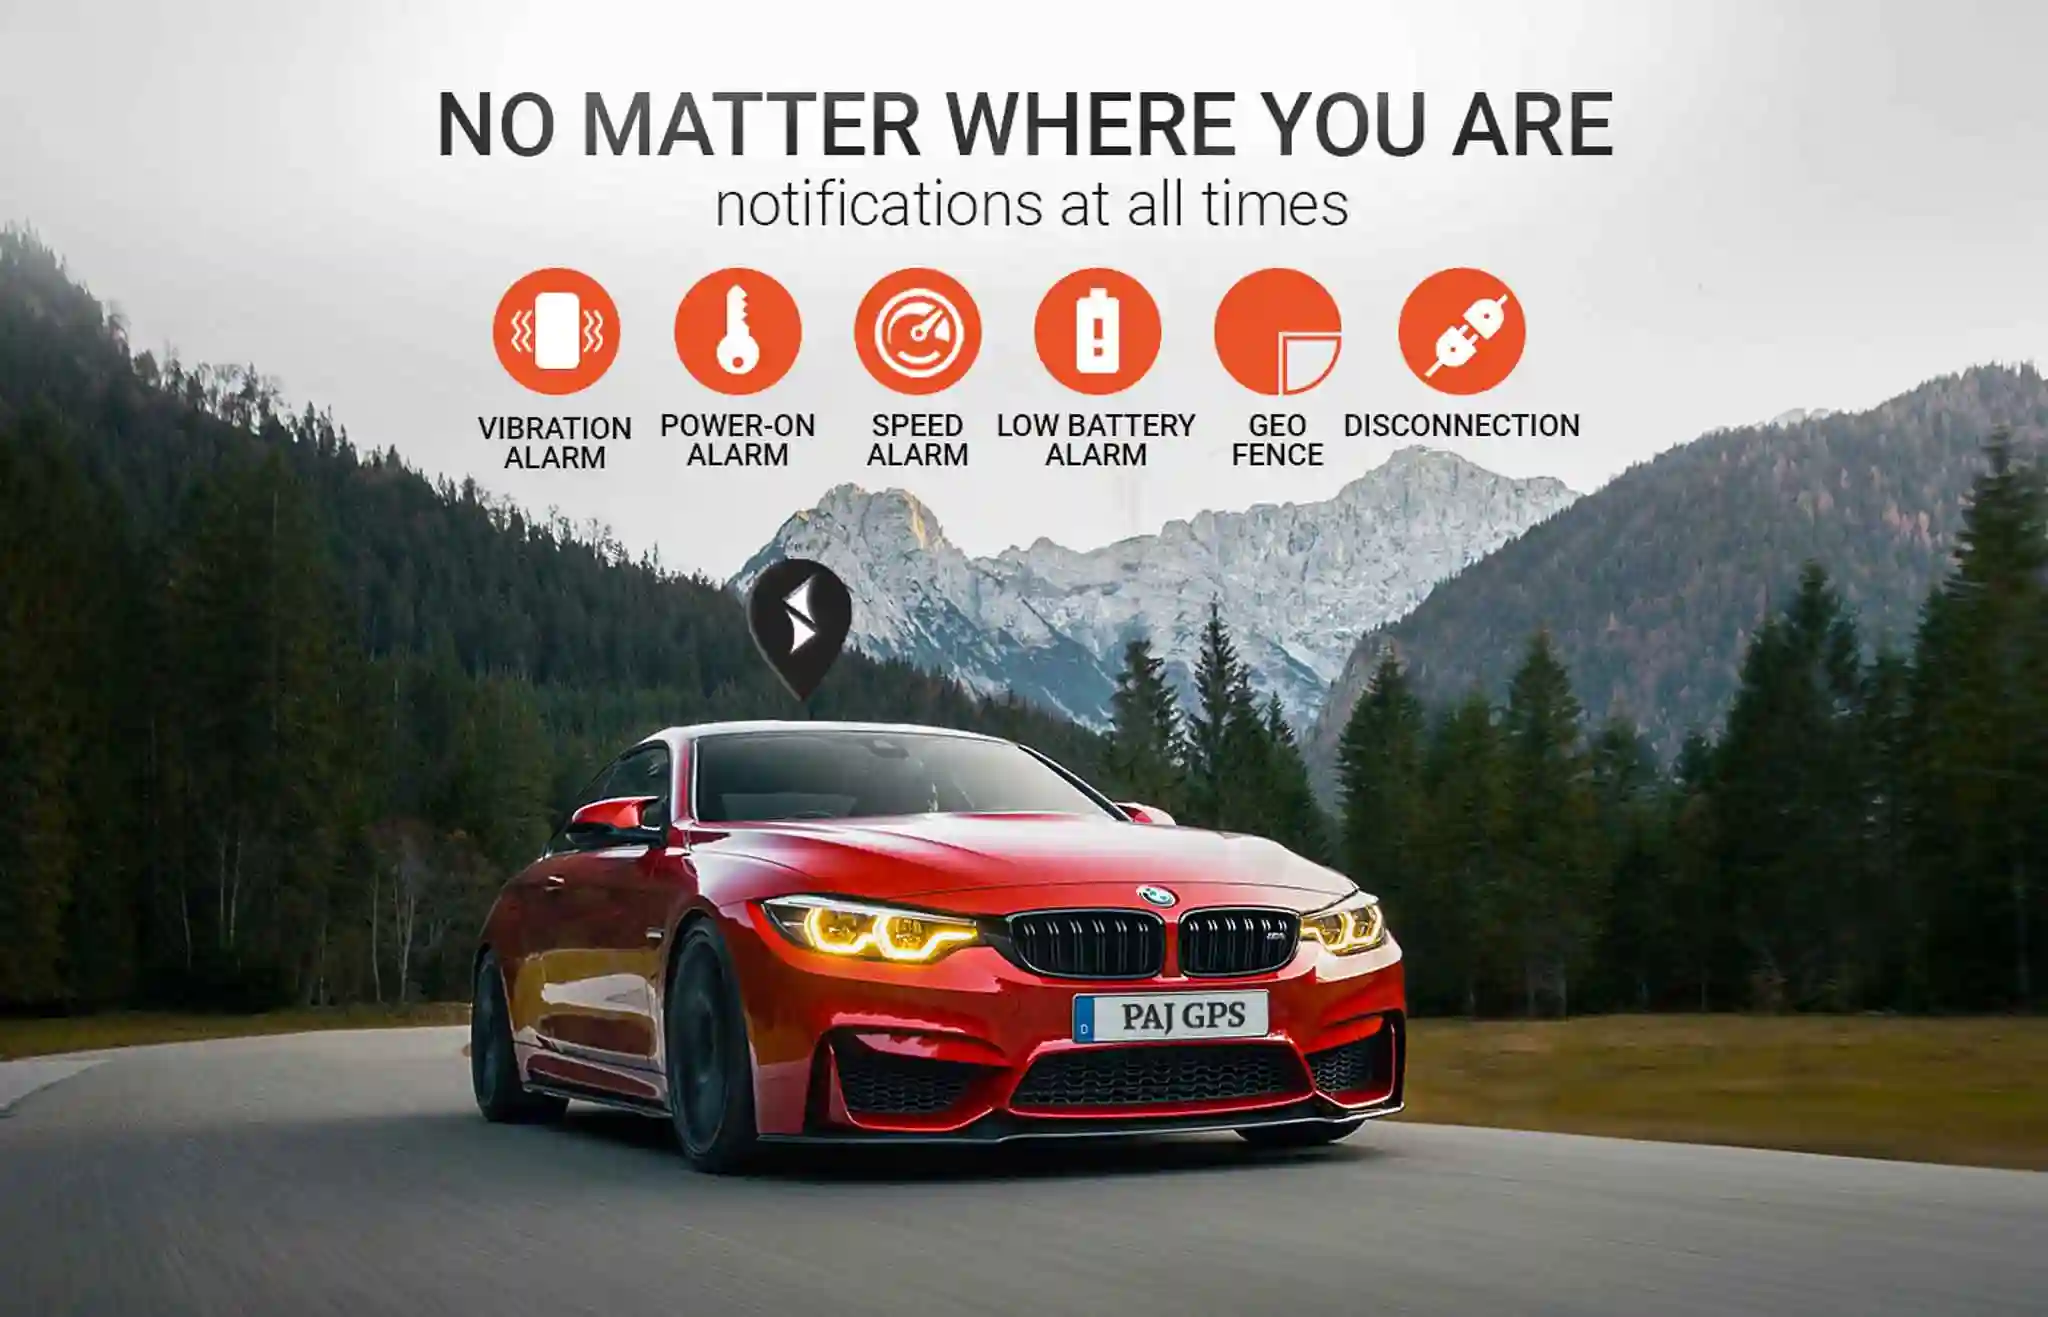 PAJ GPS POWER Finder – GPS Tracker per auto, moto, camion, Loccalizzatore con  App con batteria a lunga durata per un tracciamento in tempo reale e  affidabile - Tracciamento live tramite App 